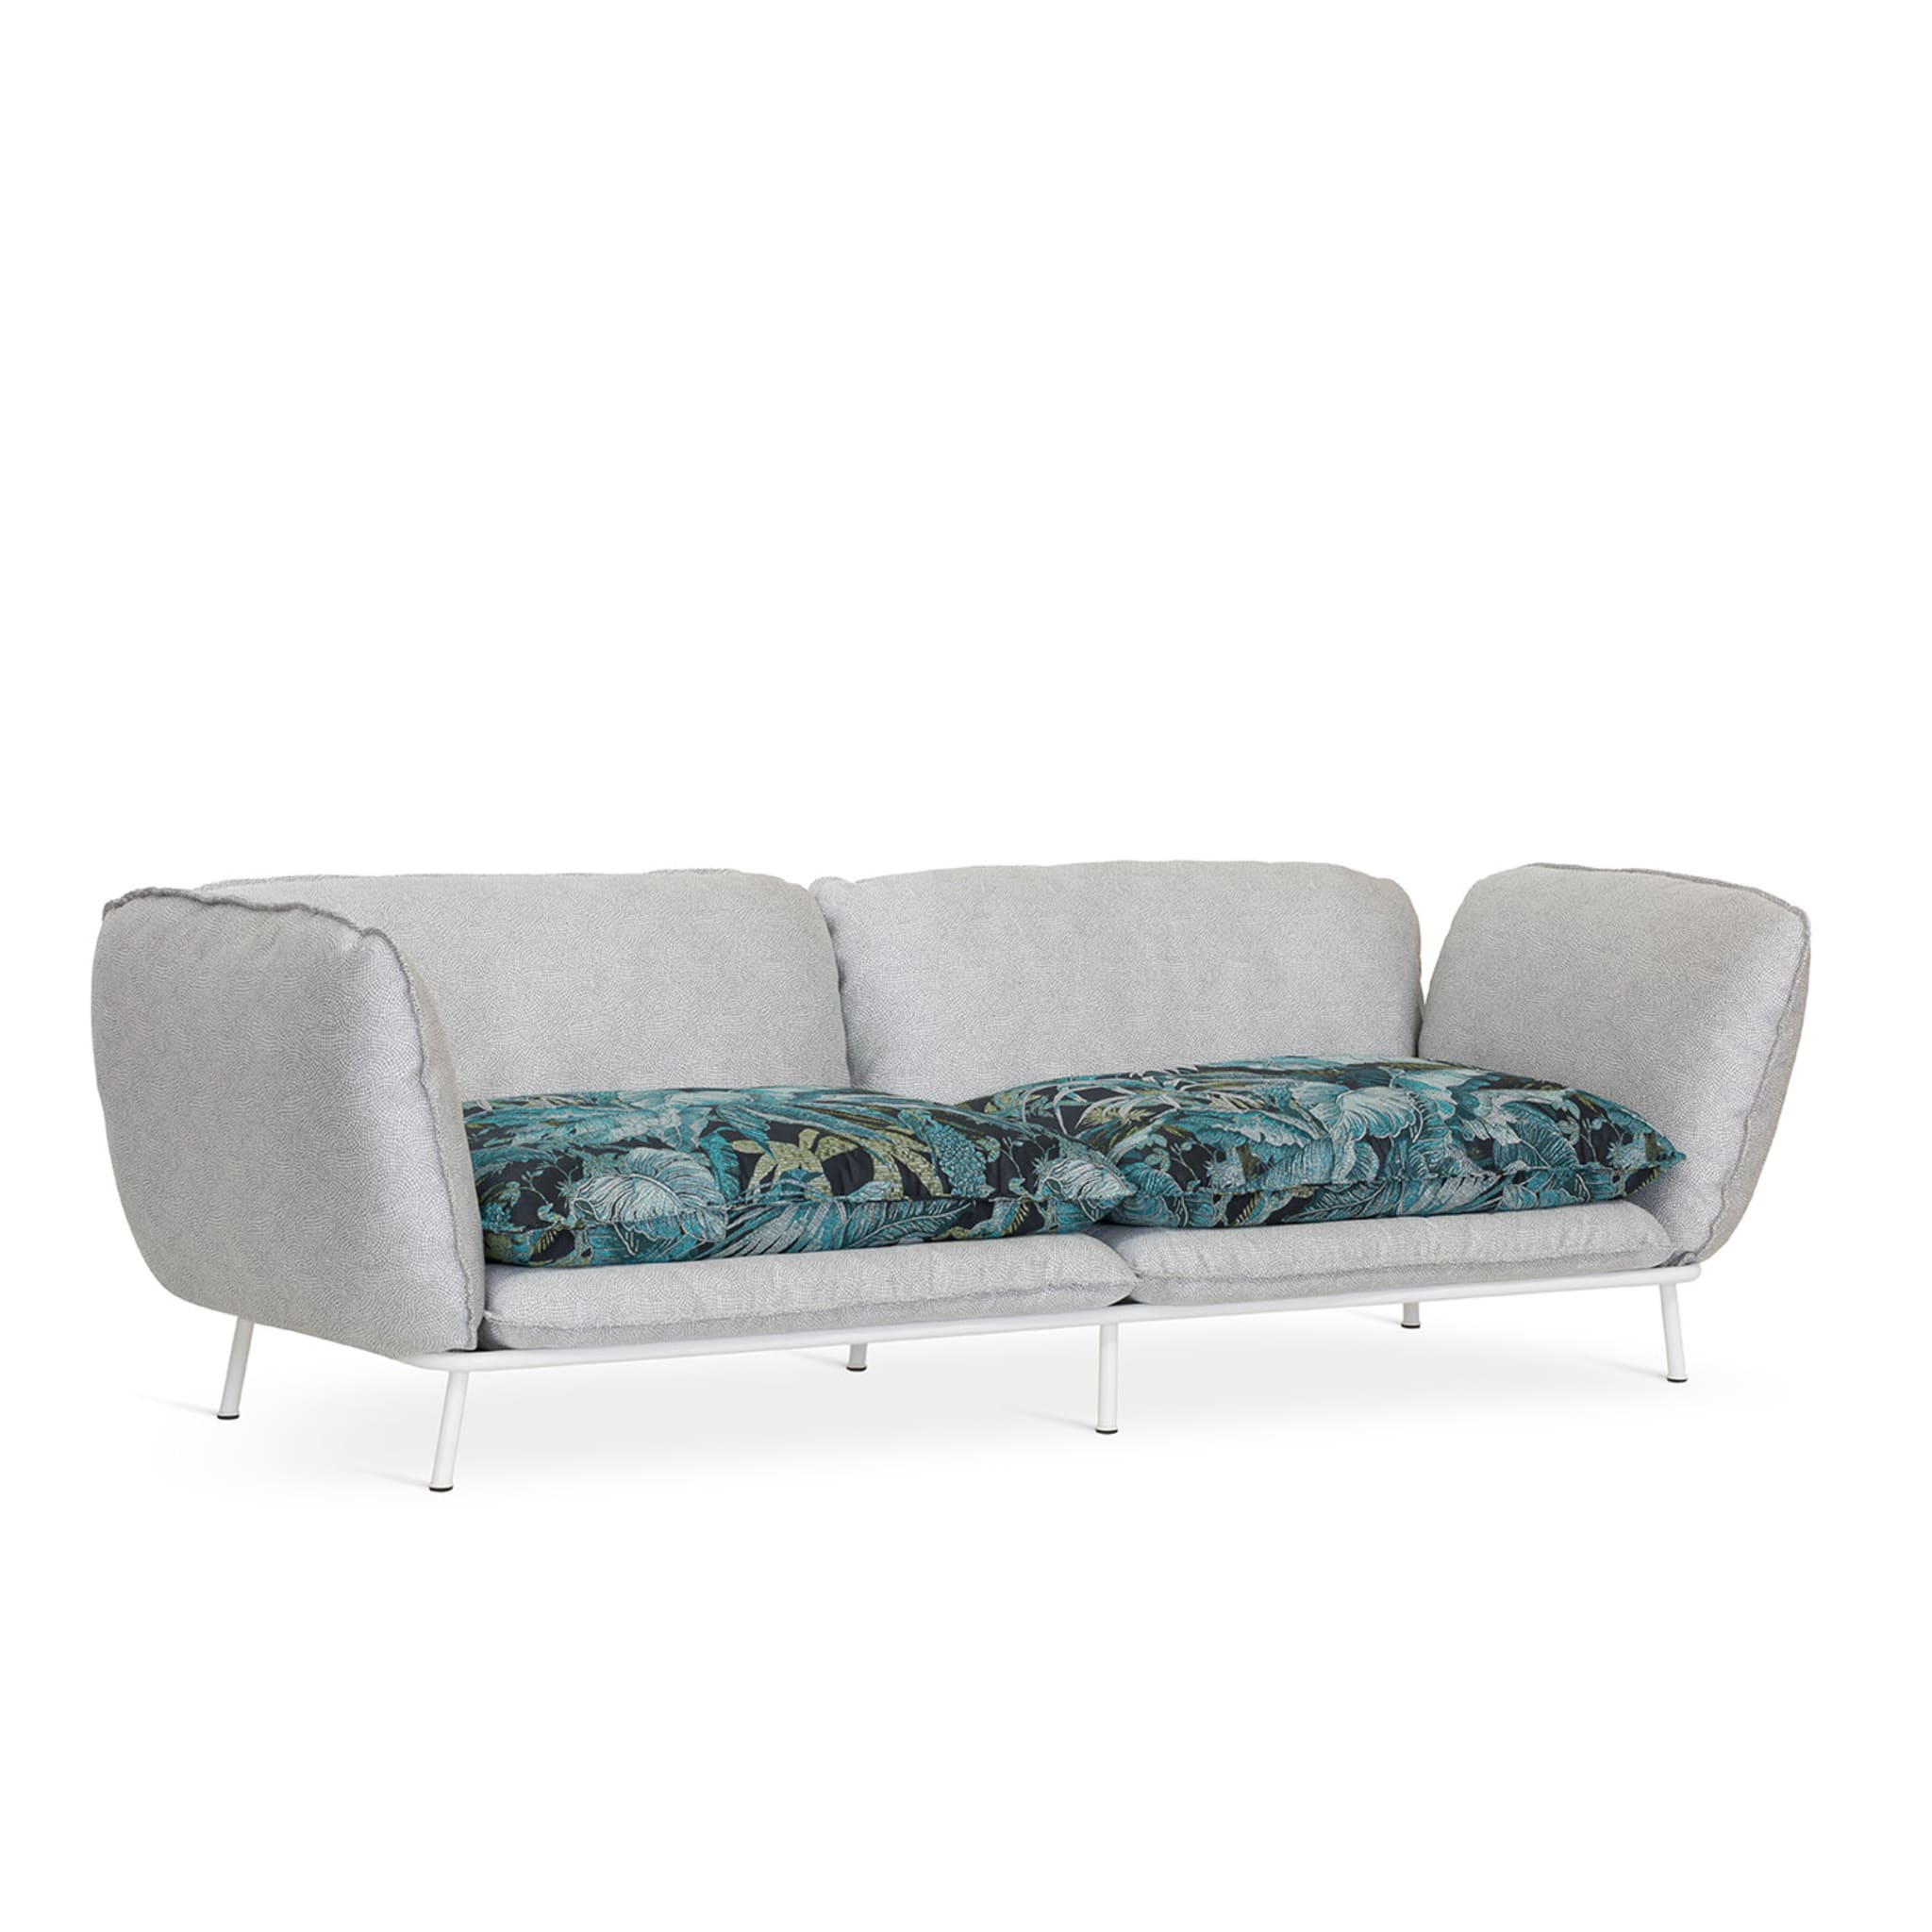 Lipari Outdoor 2-Seat Sofa by Massimiliano Raggi - Alternative view 2